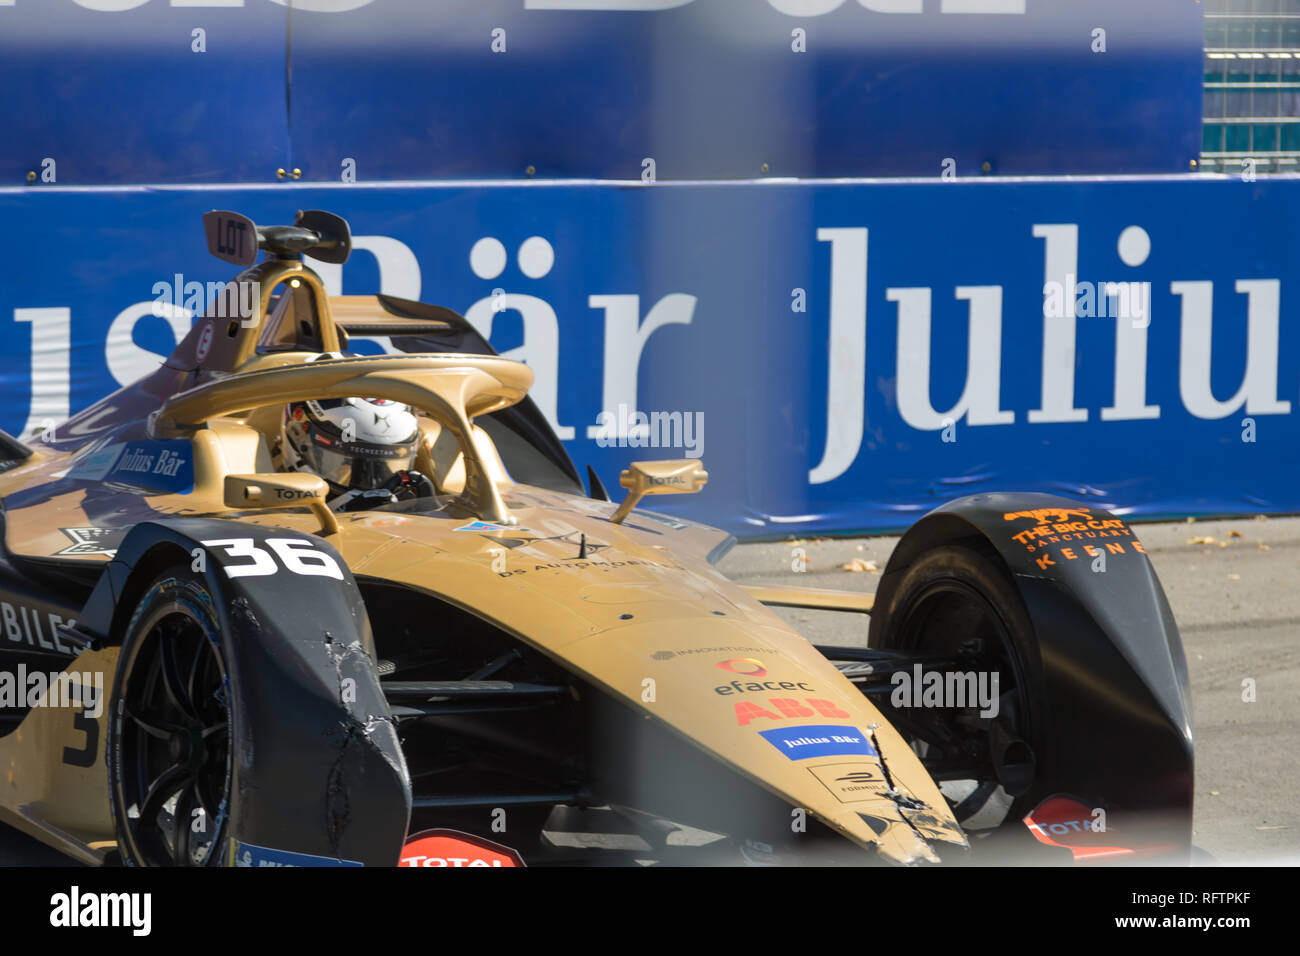 SANTIAGO EPRIX 2019. FIA FORMULA E PAQUE O'Higgins Foto de stock